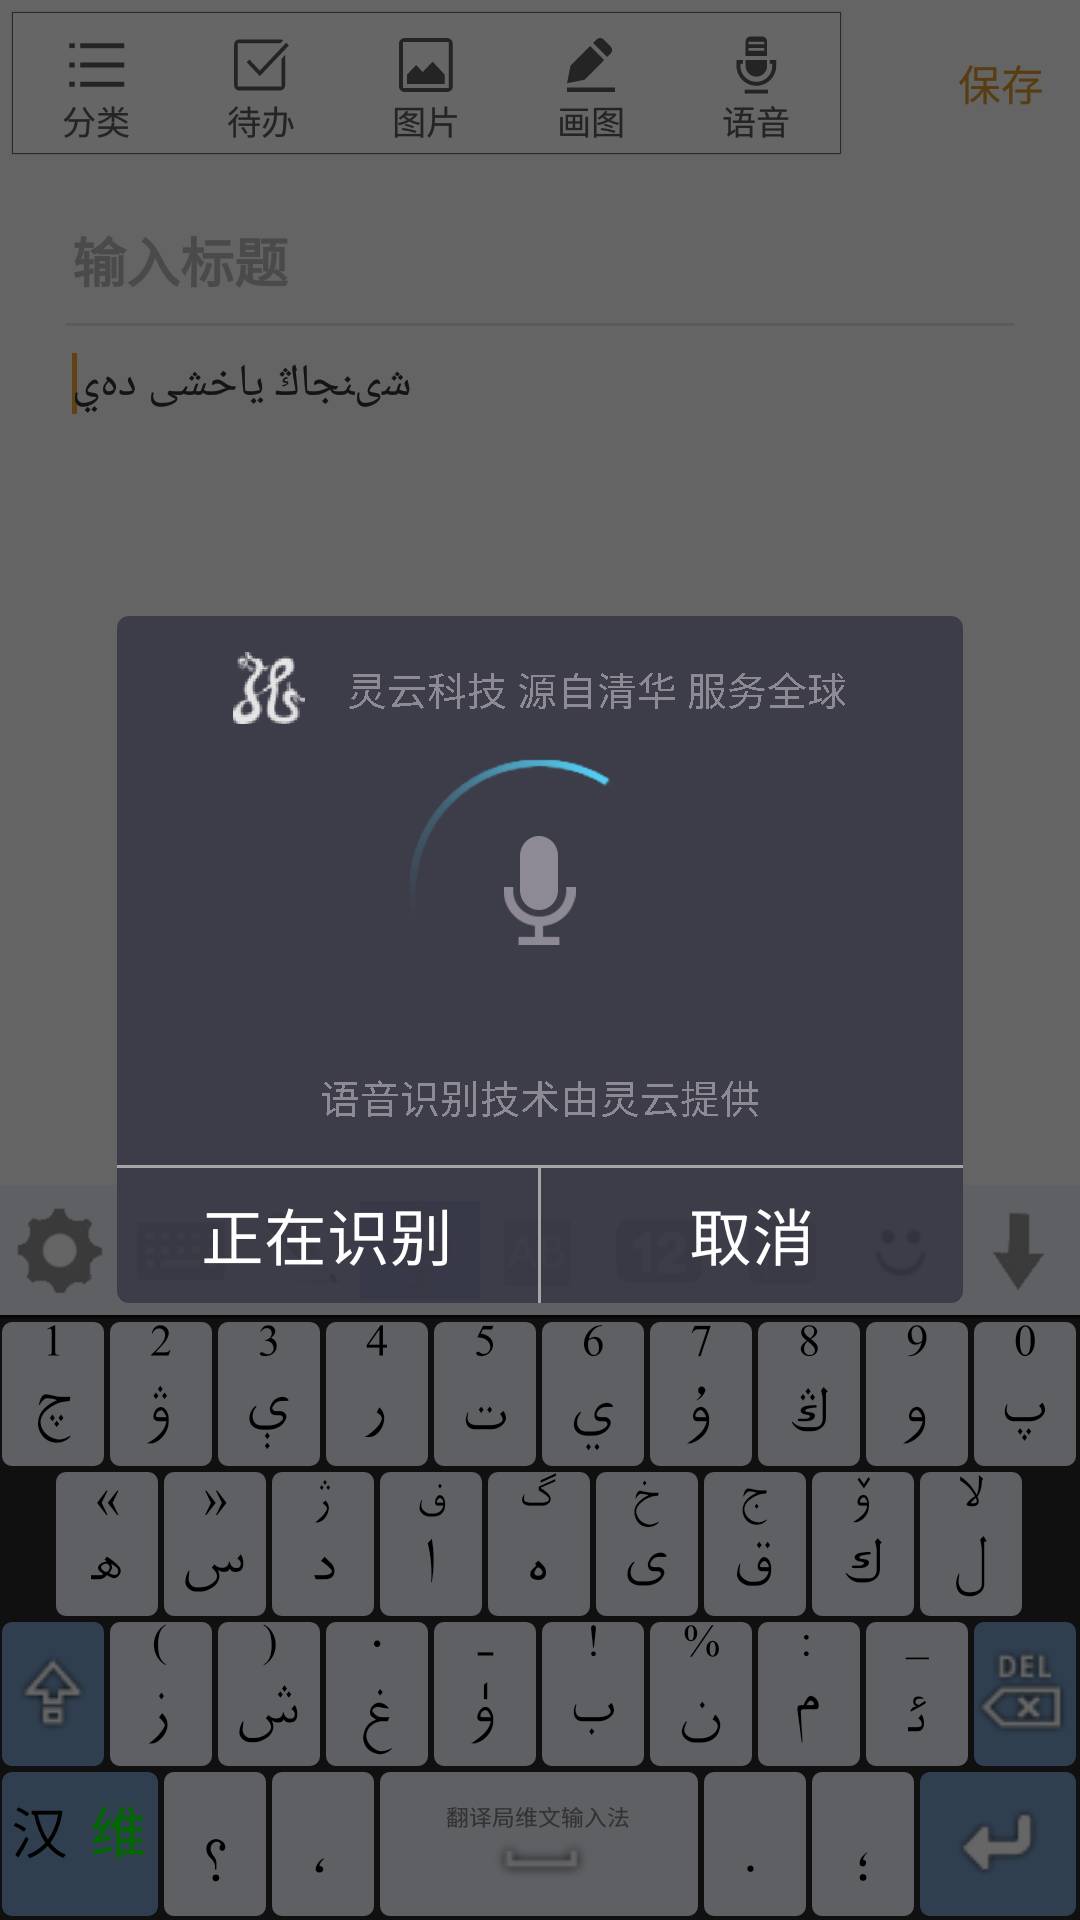 看灵云维吾尔语智能语音技术在新疆的应用